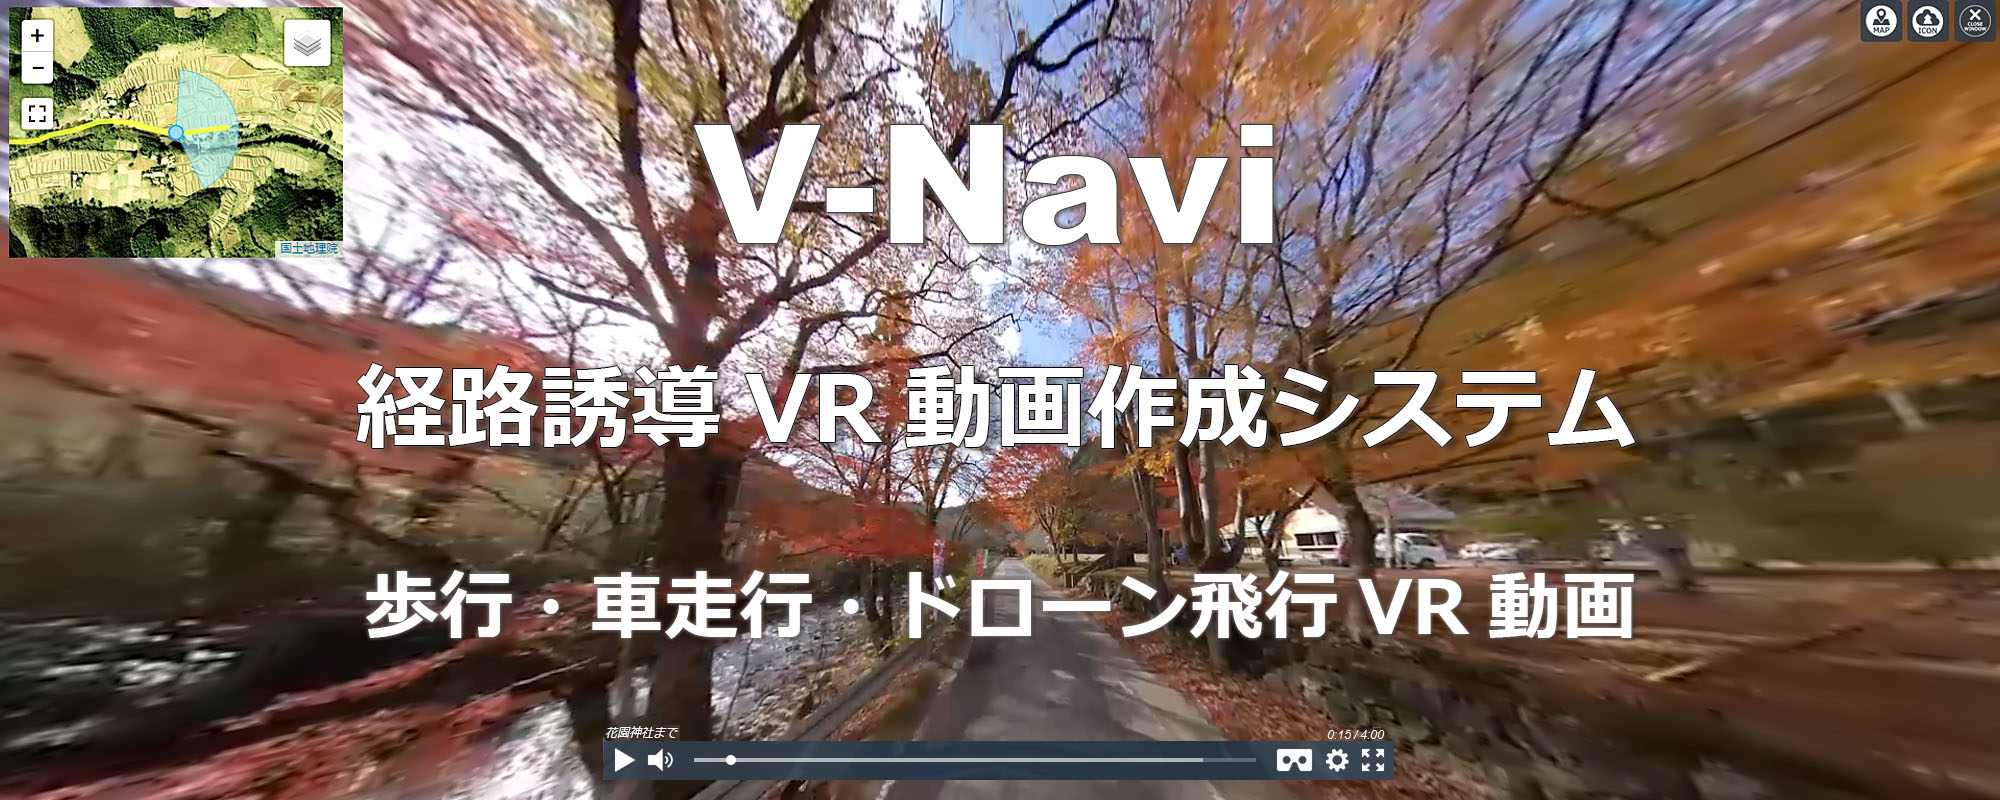 経路誘導VR動画作成CMS・クラウドシステムV-Navi